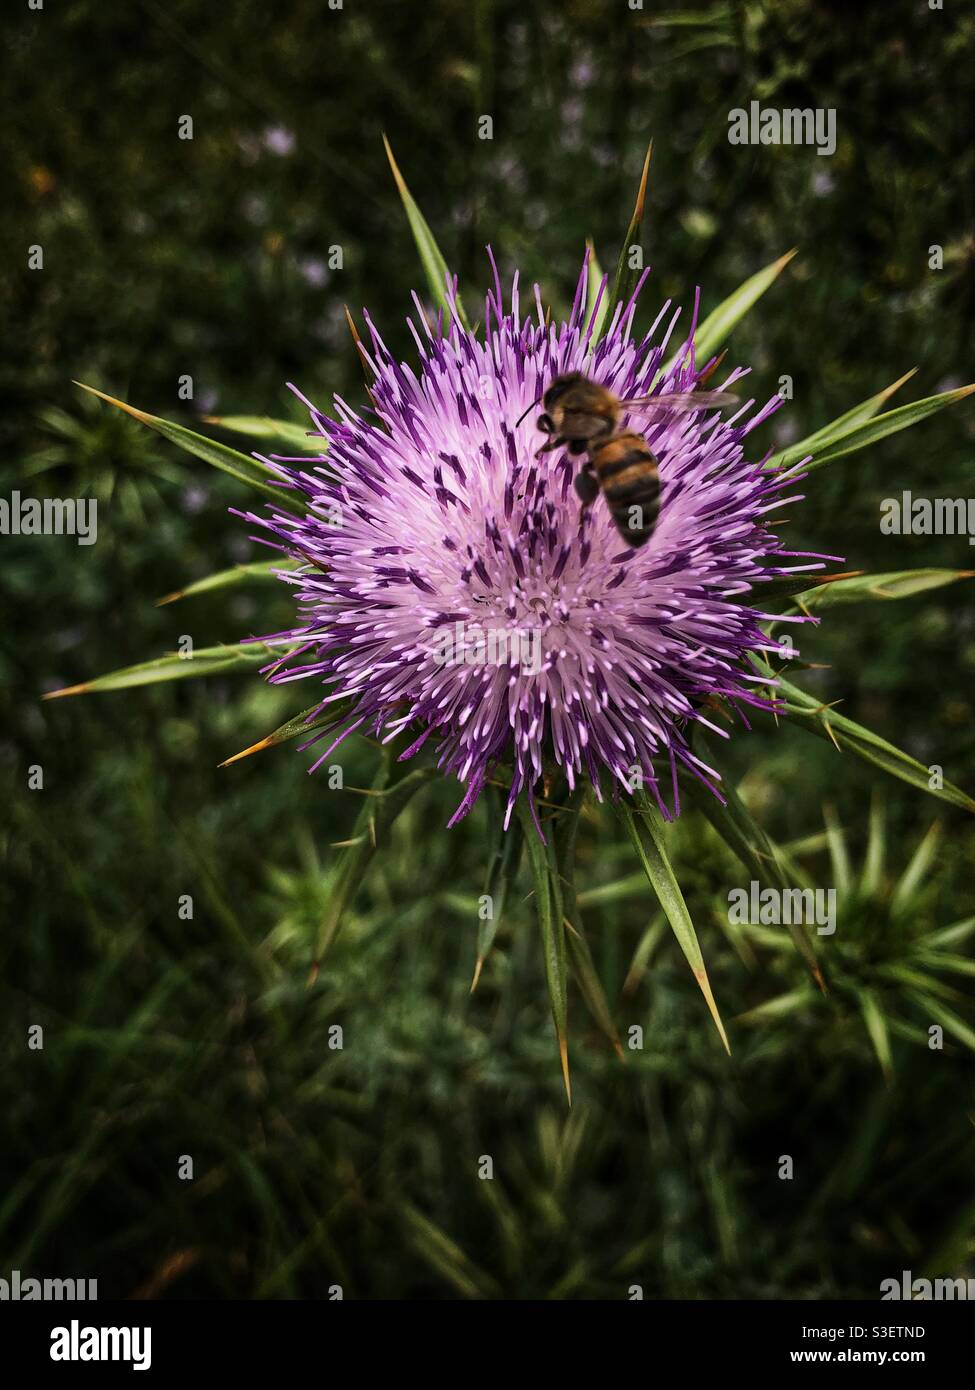 Honey bee on milk thistle plant Stock Photo